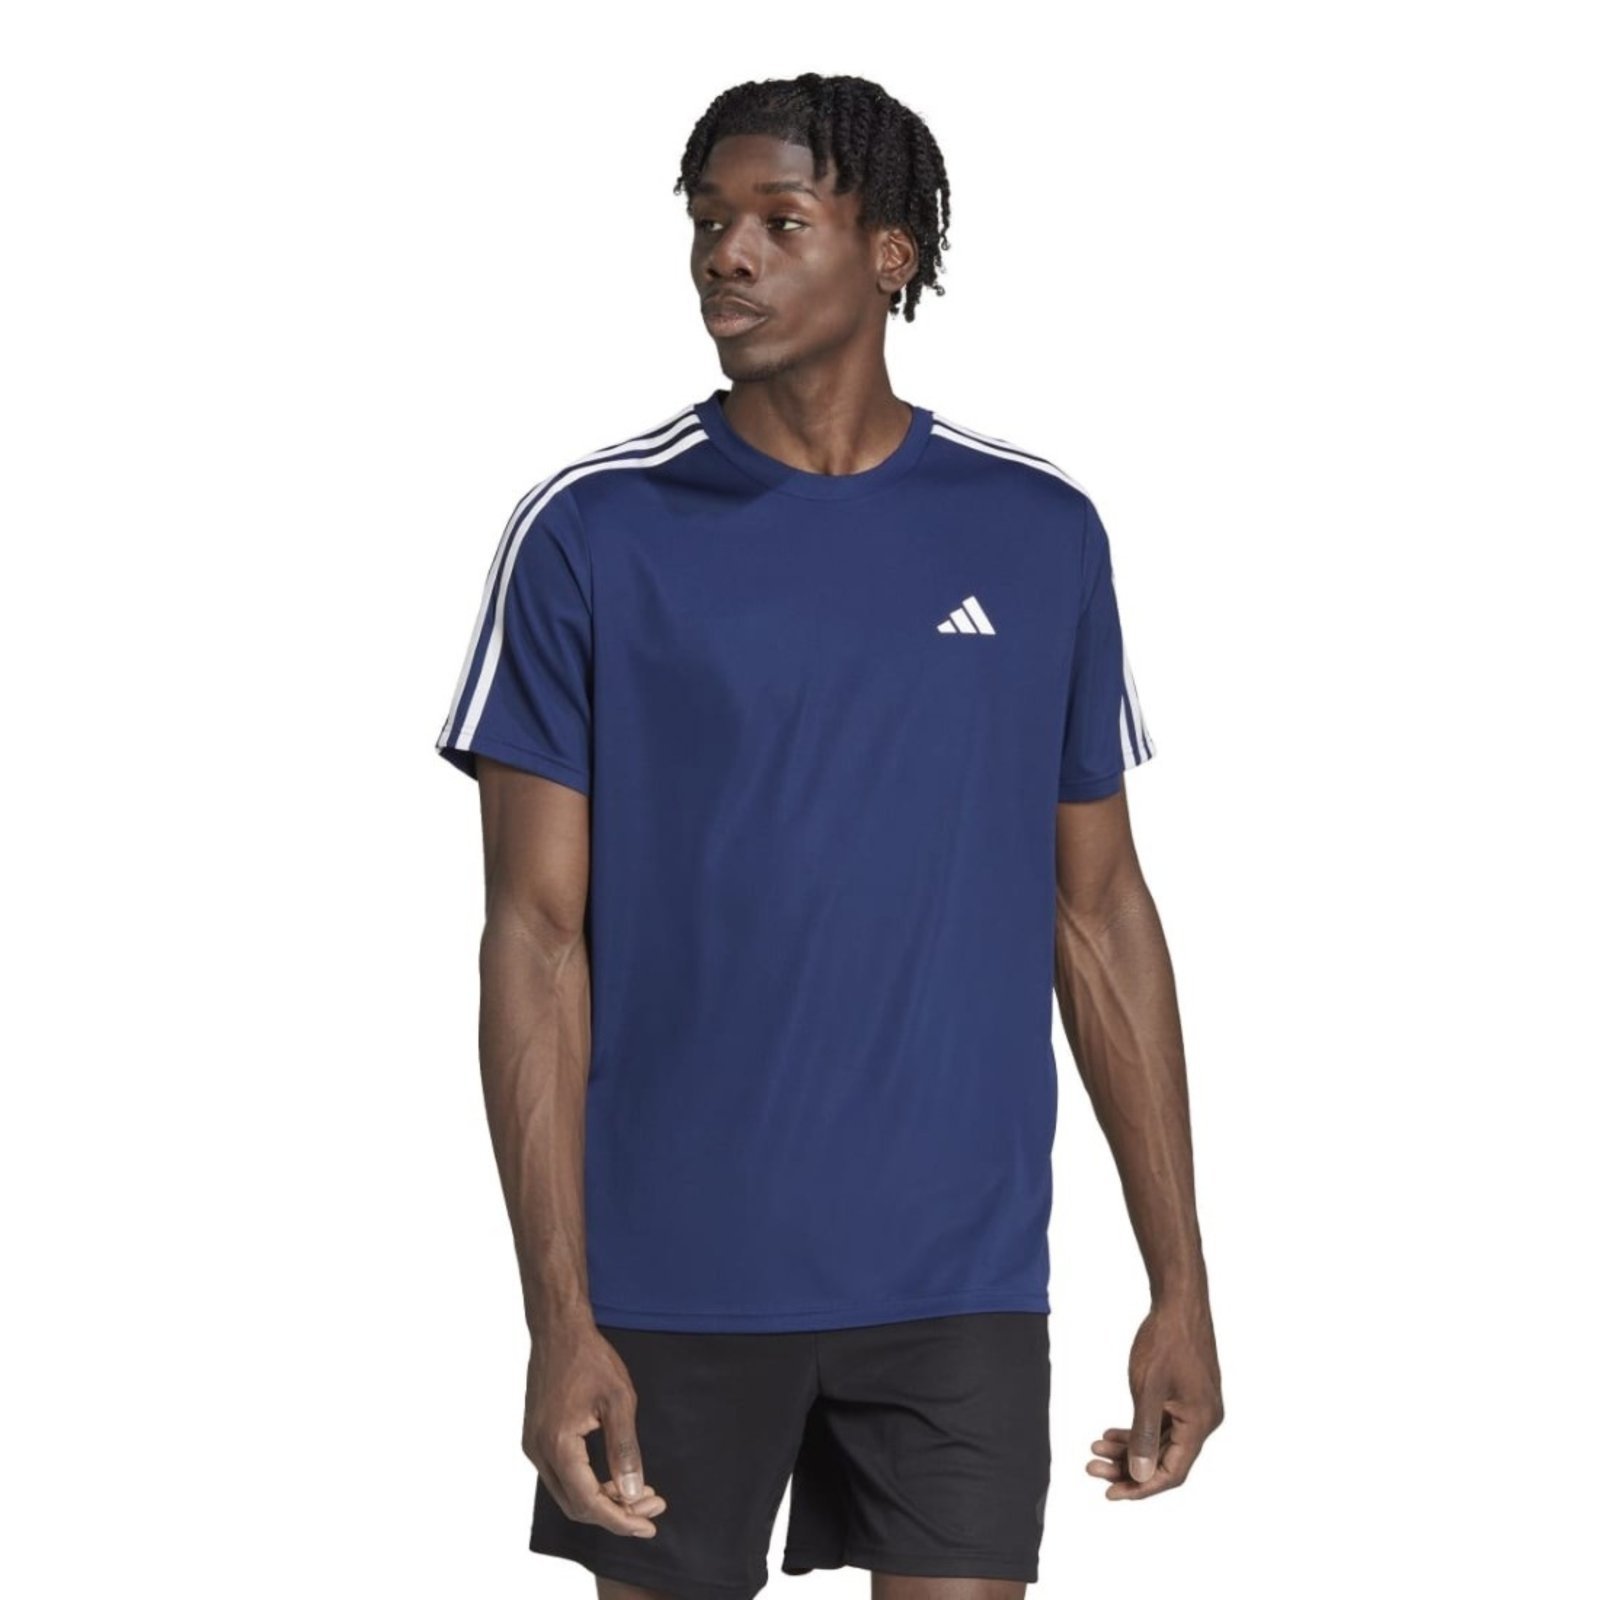 Camiseta Adidas Masculina Treino Train Essentials 3-Stripes - Compre Agora